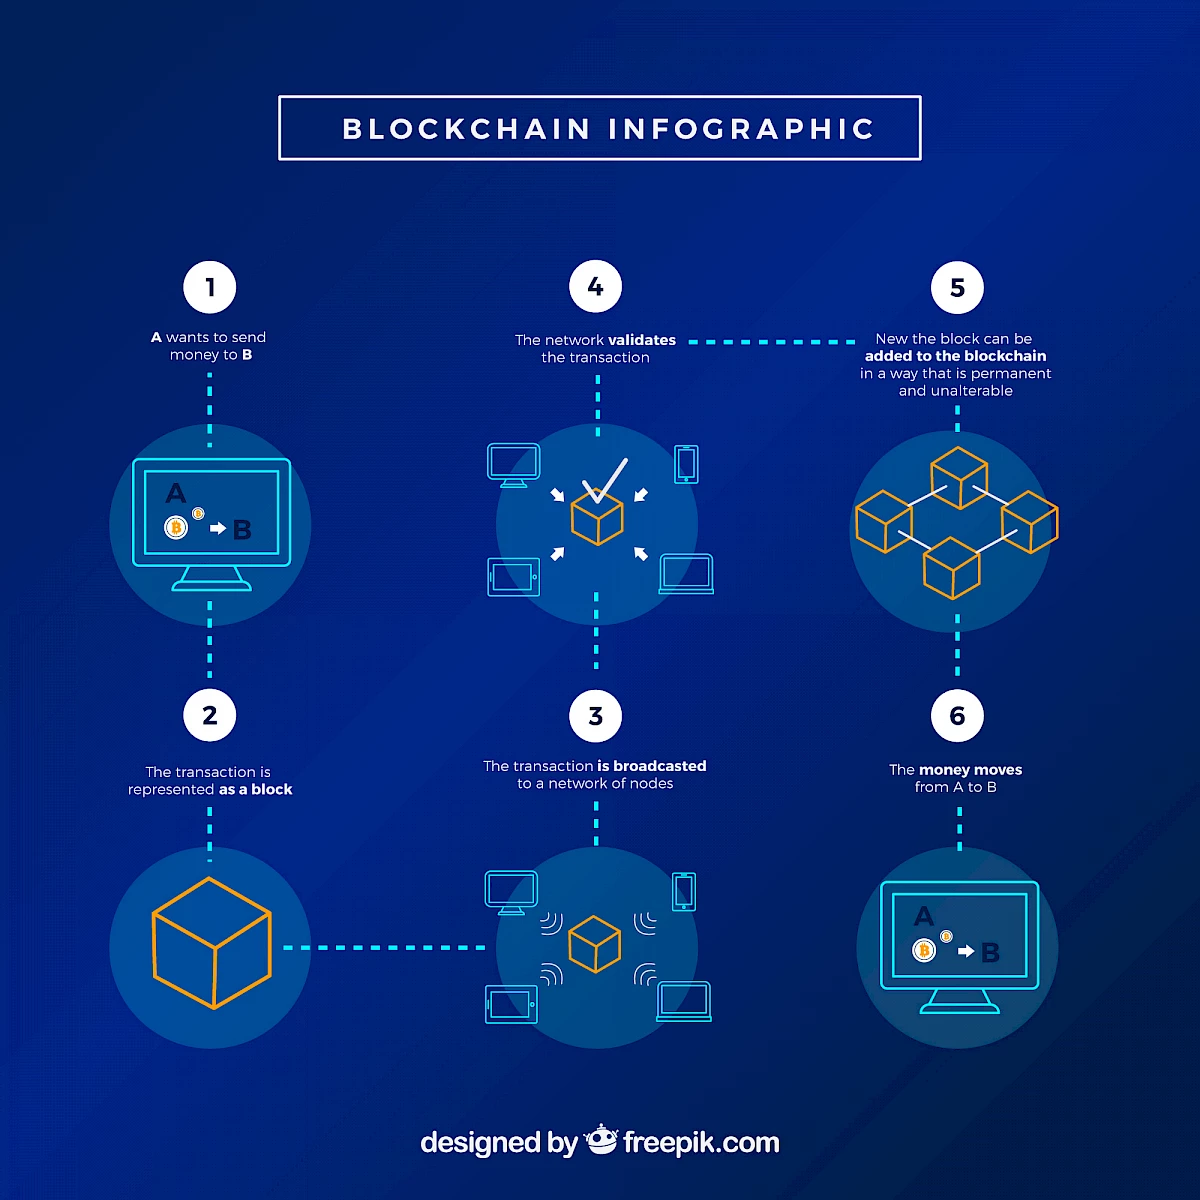 Blockchain anhand eines Beispiels erklärt.